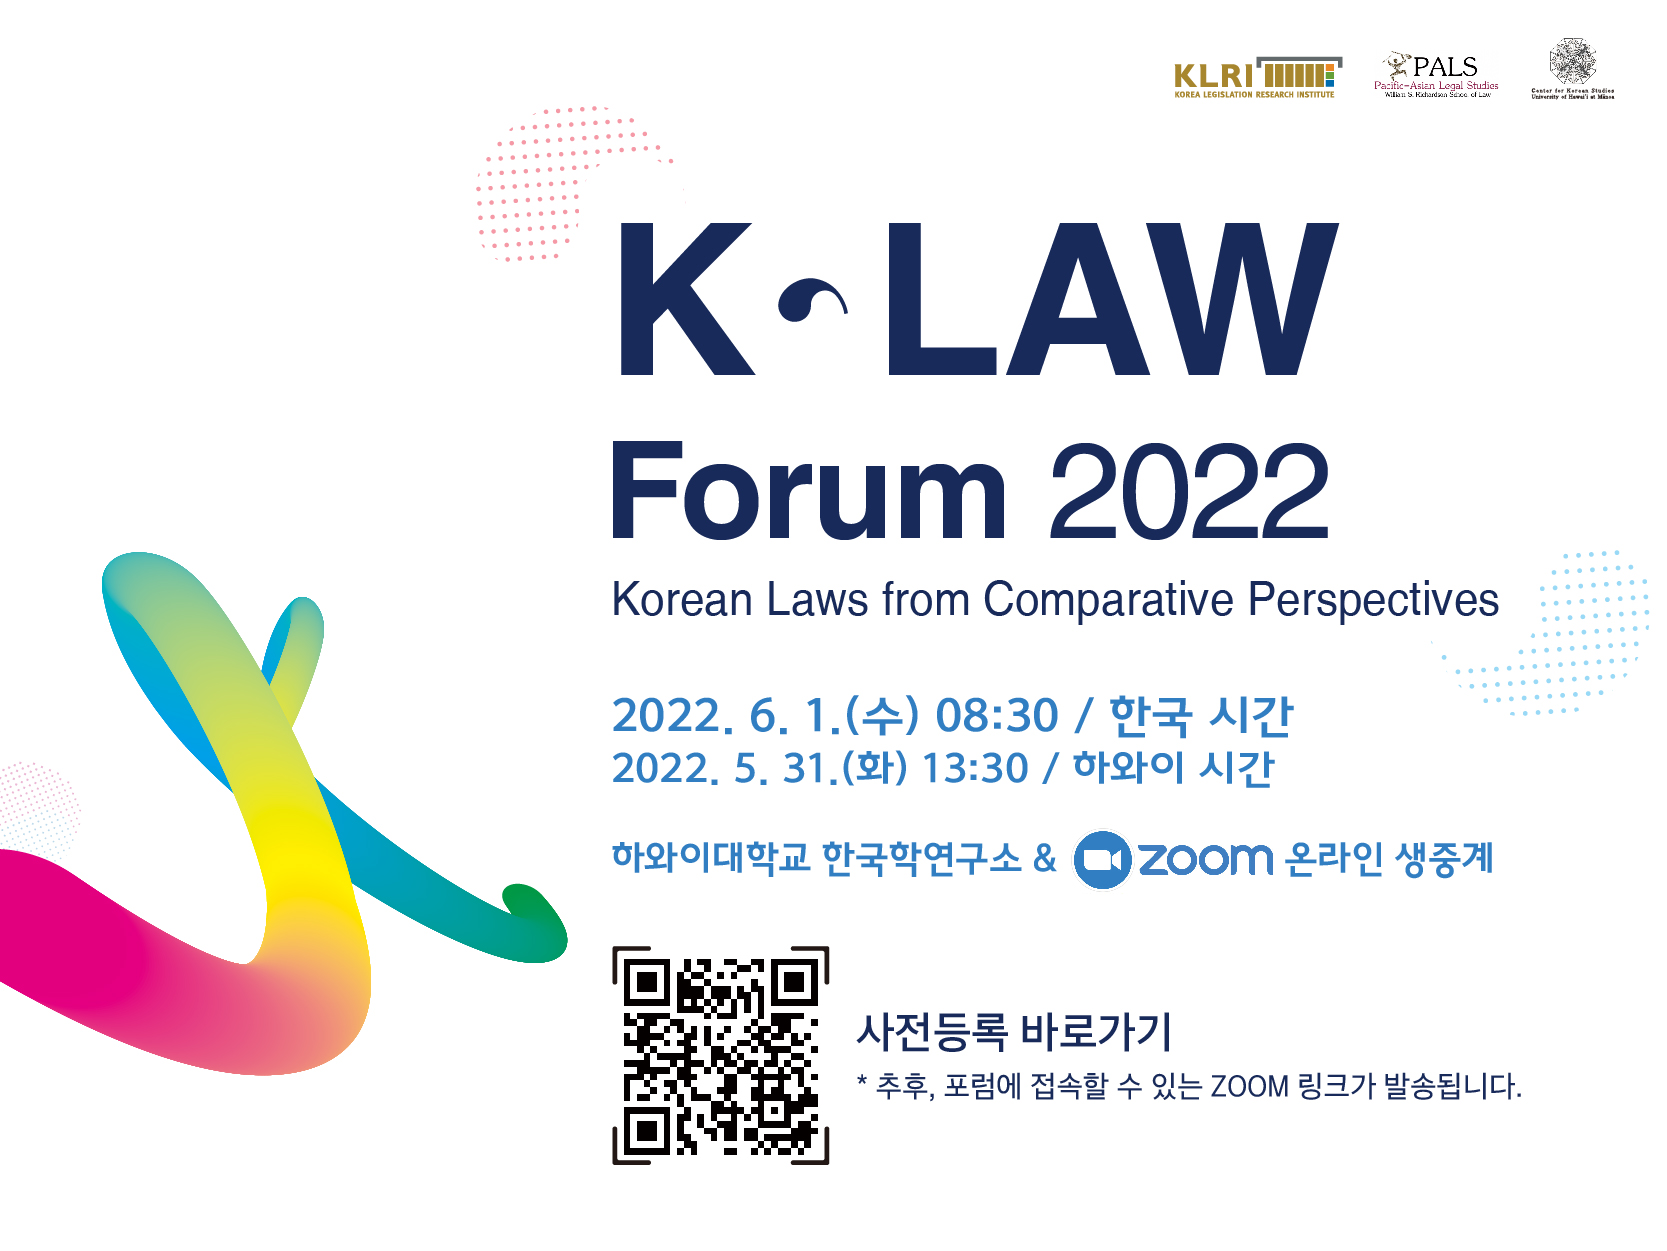 2022년 한국법포럼 (K-Law Forum 2022) - 자세한 내용은 하단 참조